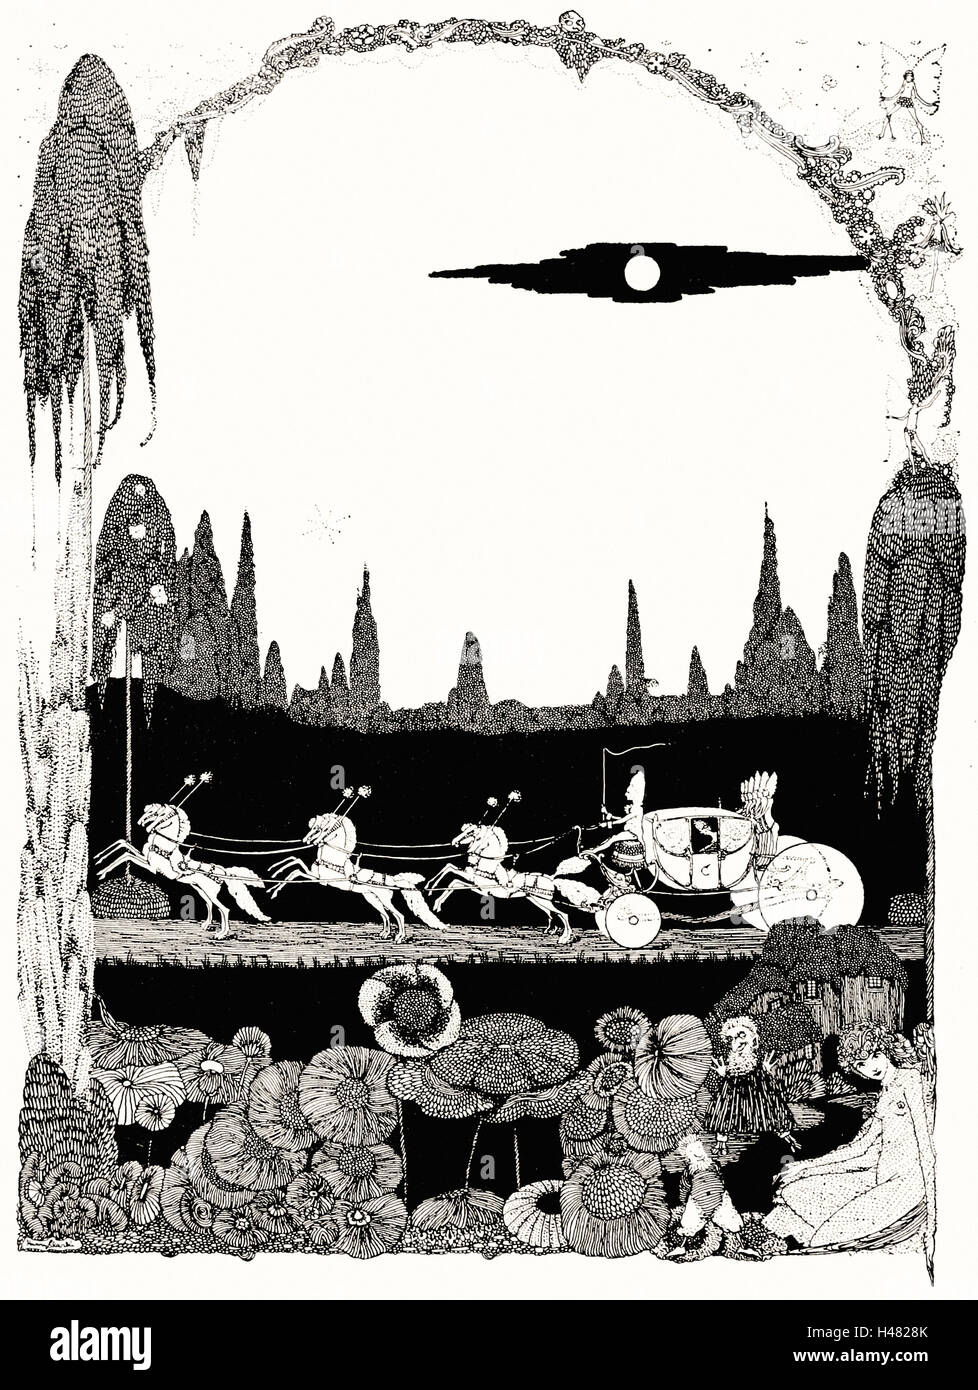 Harry Clarke - pagina 78 illustrazione di fiabe di Charles Perrault (Clarke, 1922) Foto Stock